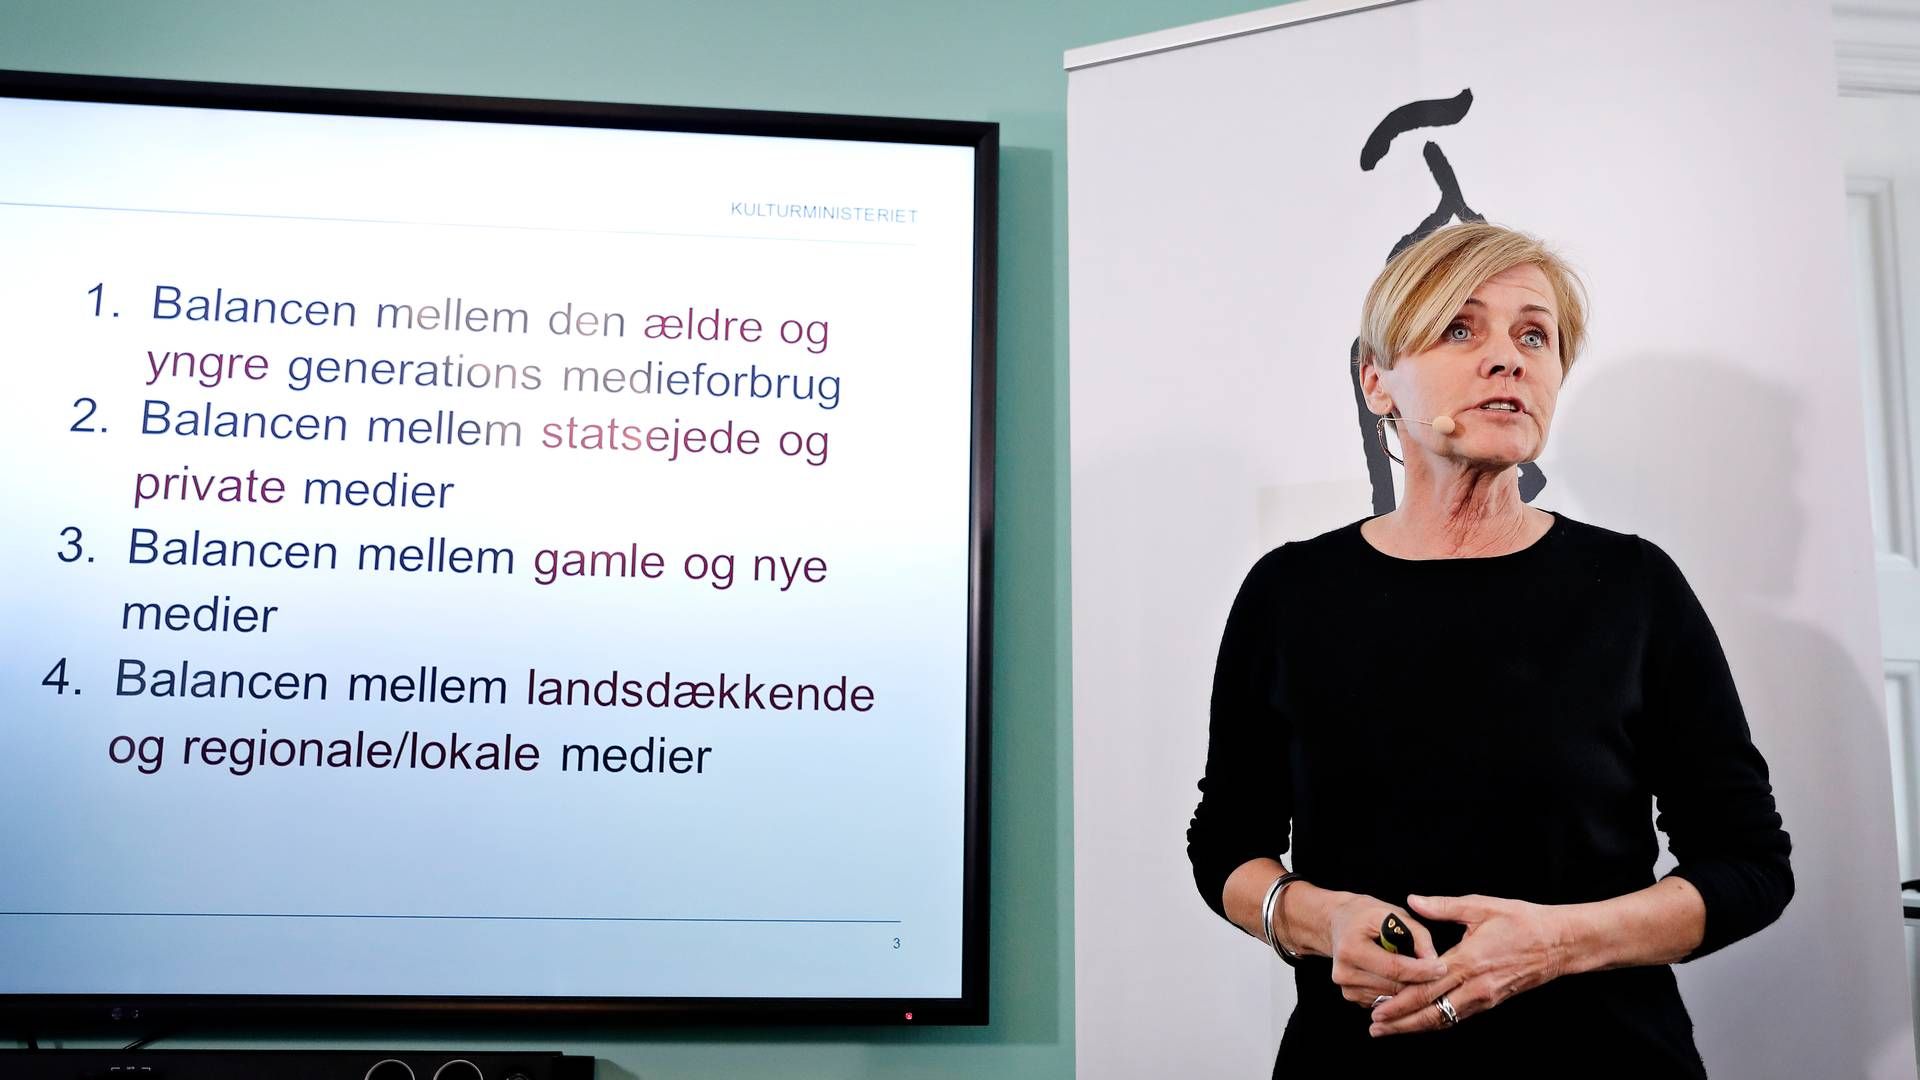 Daværende kulturminister Mette Bock fremlagde VLAK-regeringens medieudspil i april 2018. | Foto: Jens Dresling